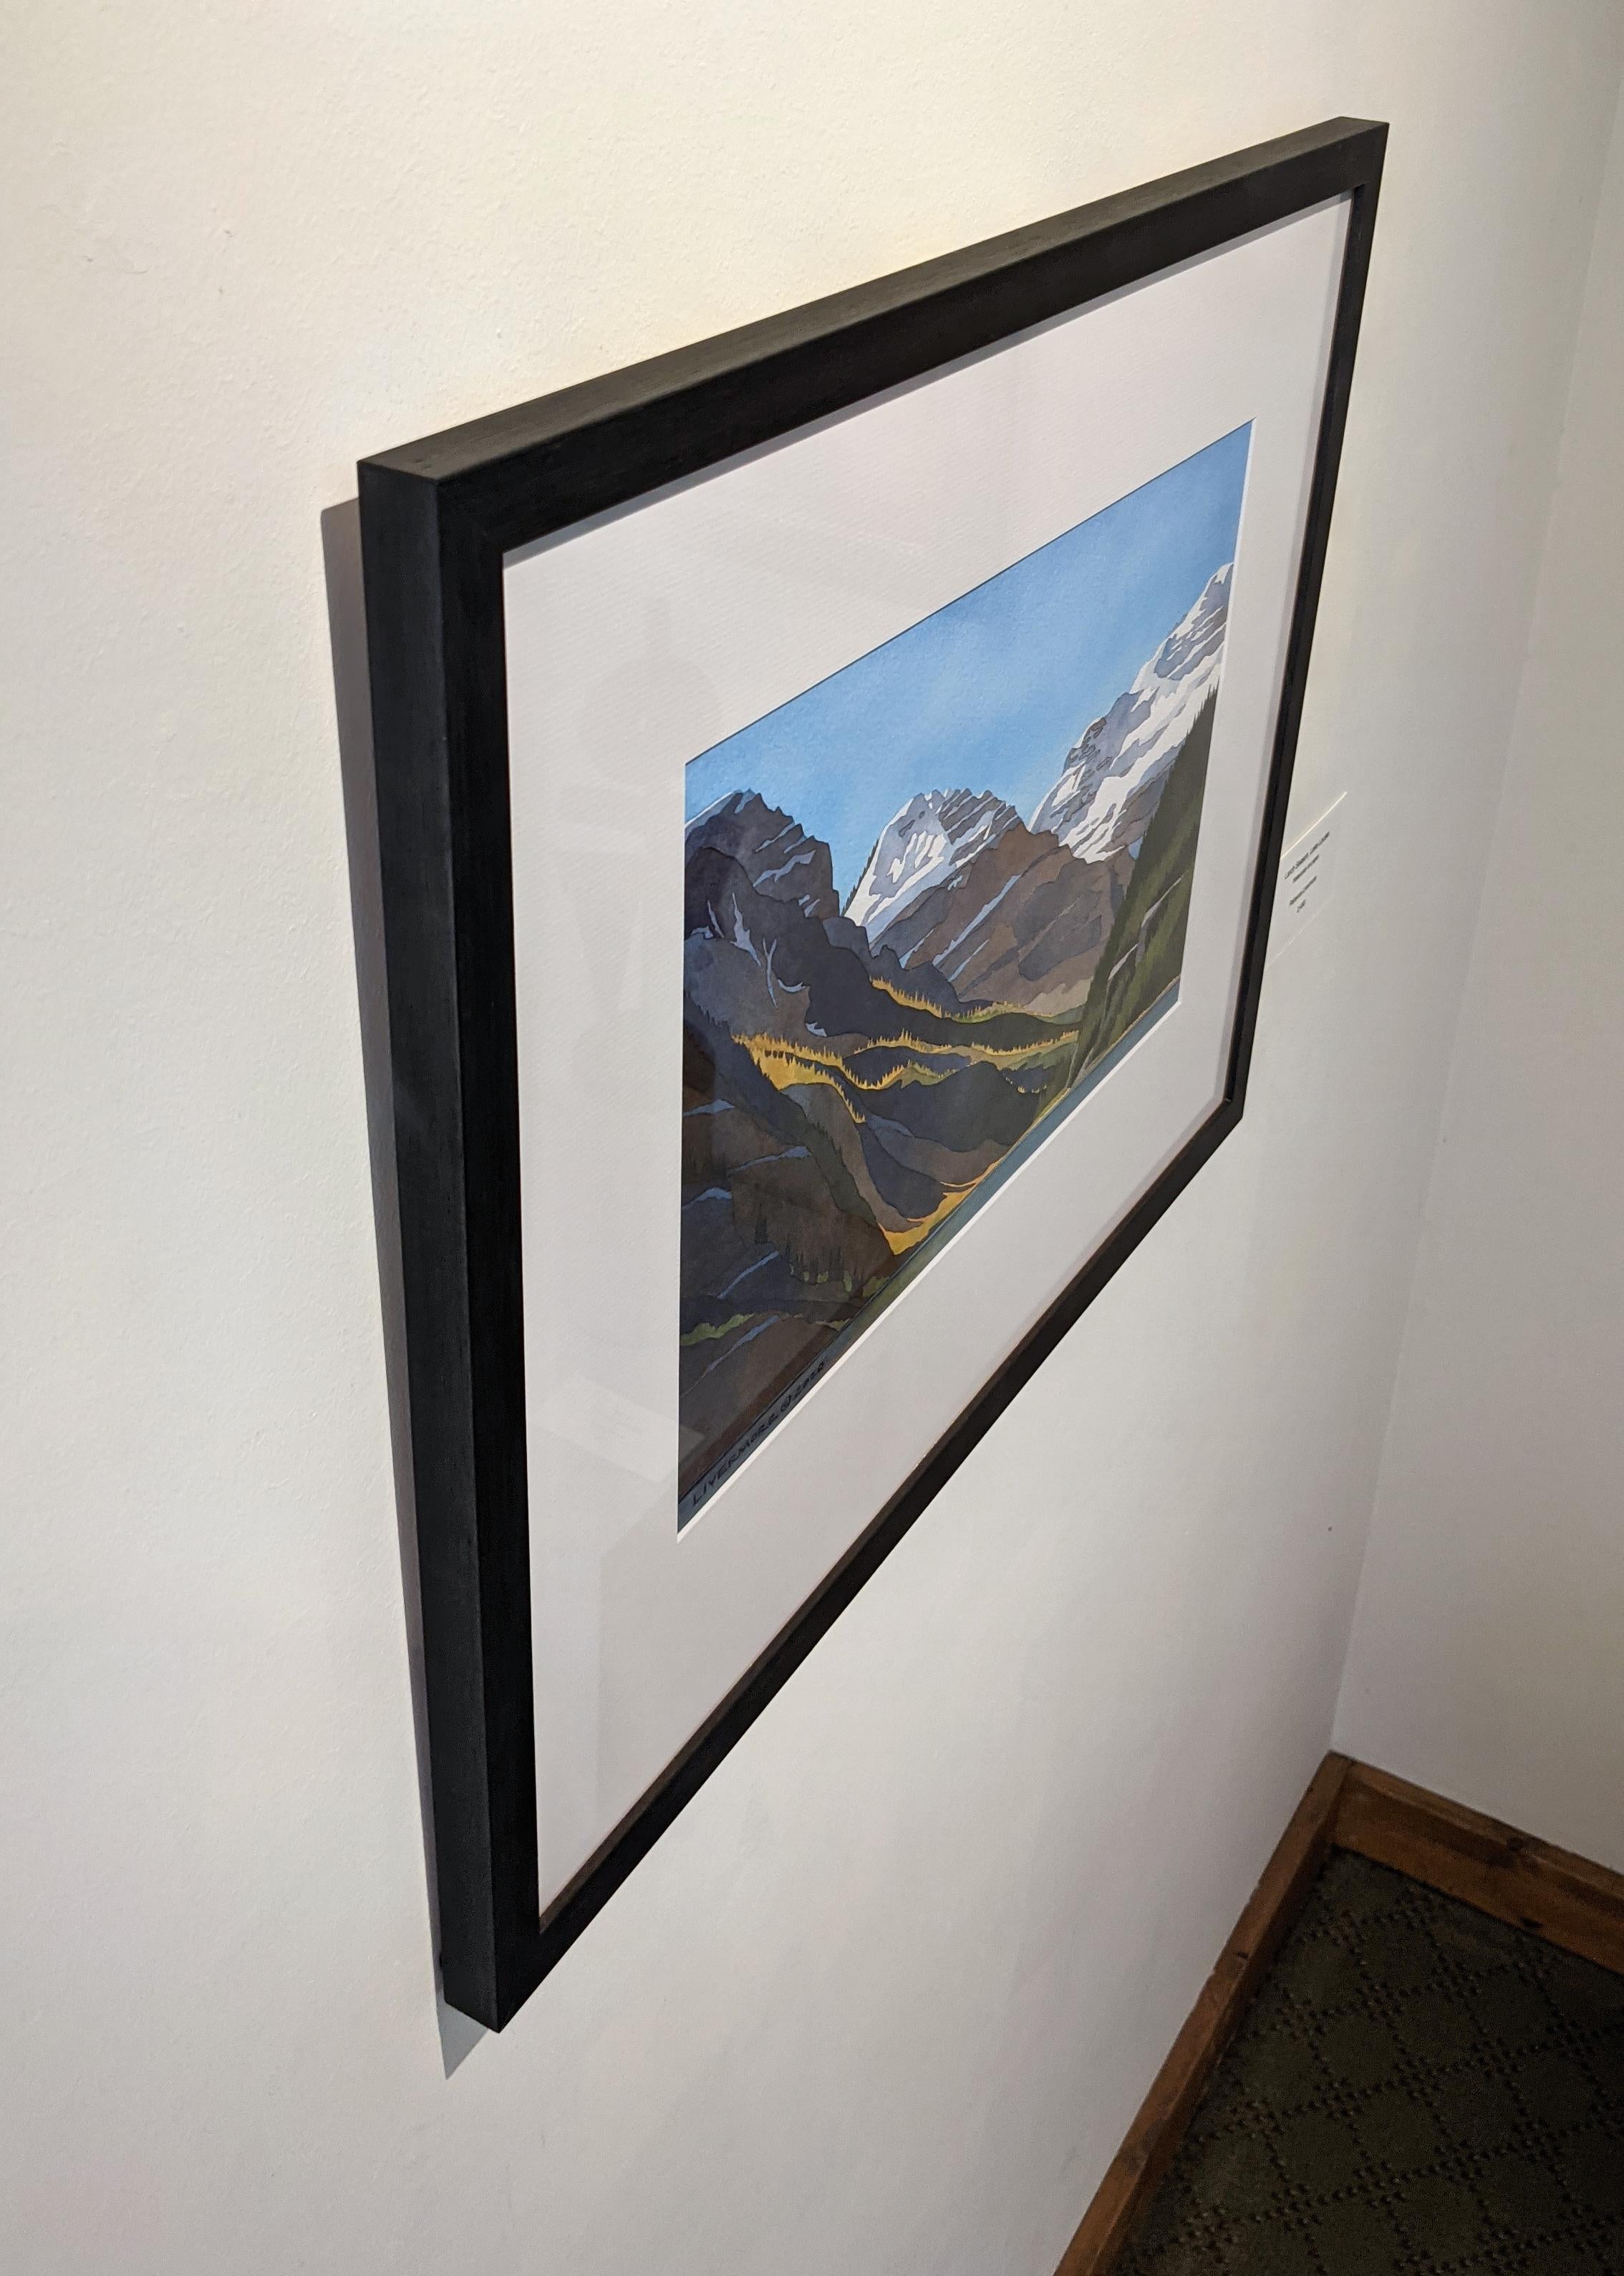 Larch-Zeit, Lake Louise (Sonstige Kunststile), Art, von Rebecca Livermore